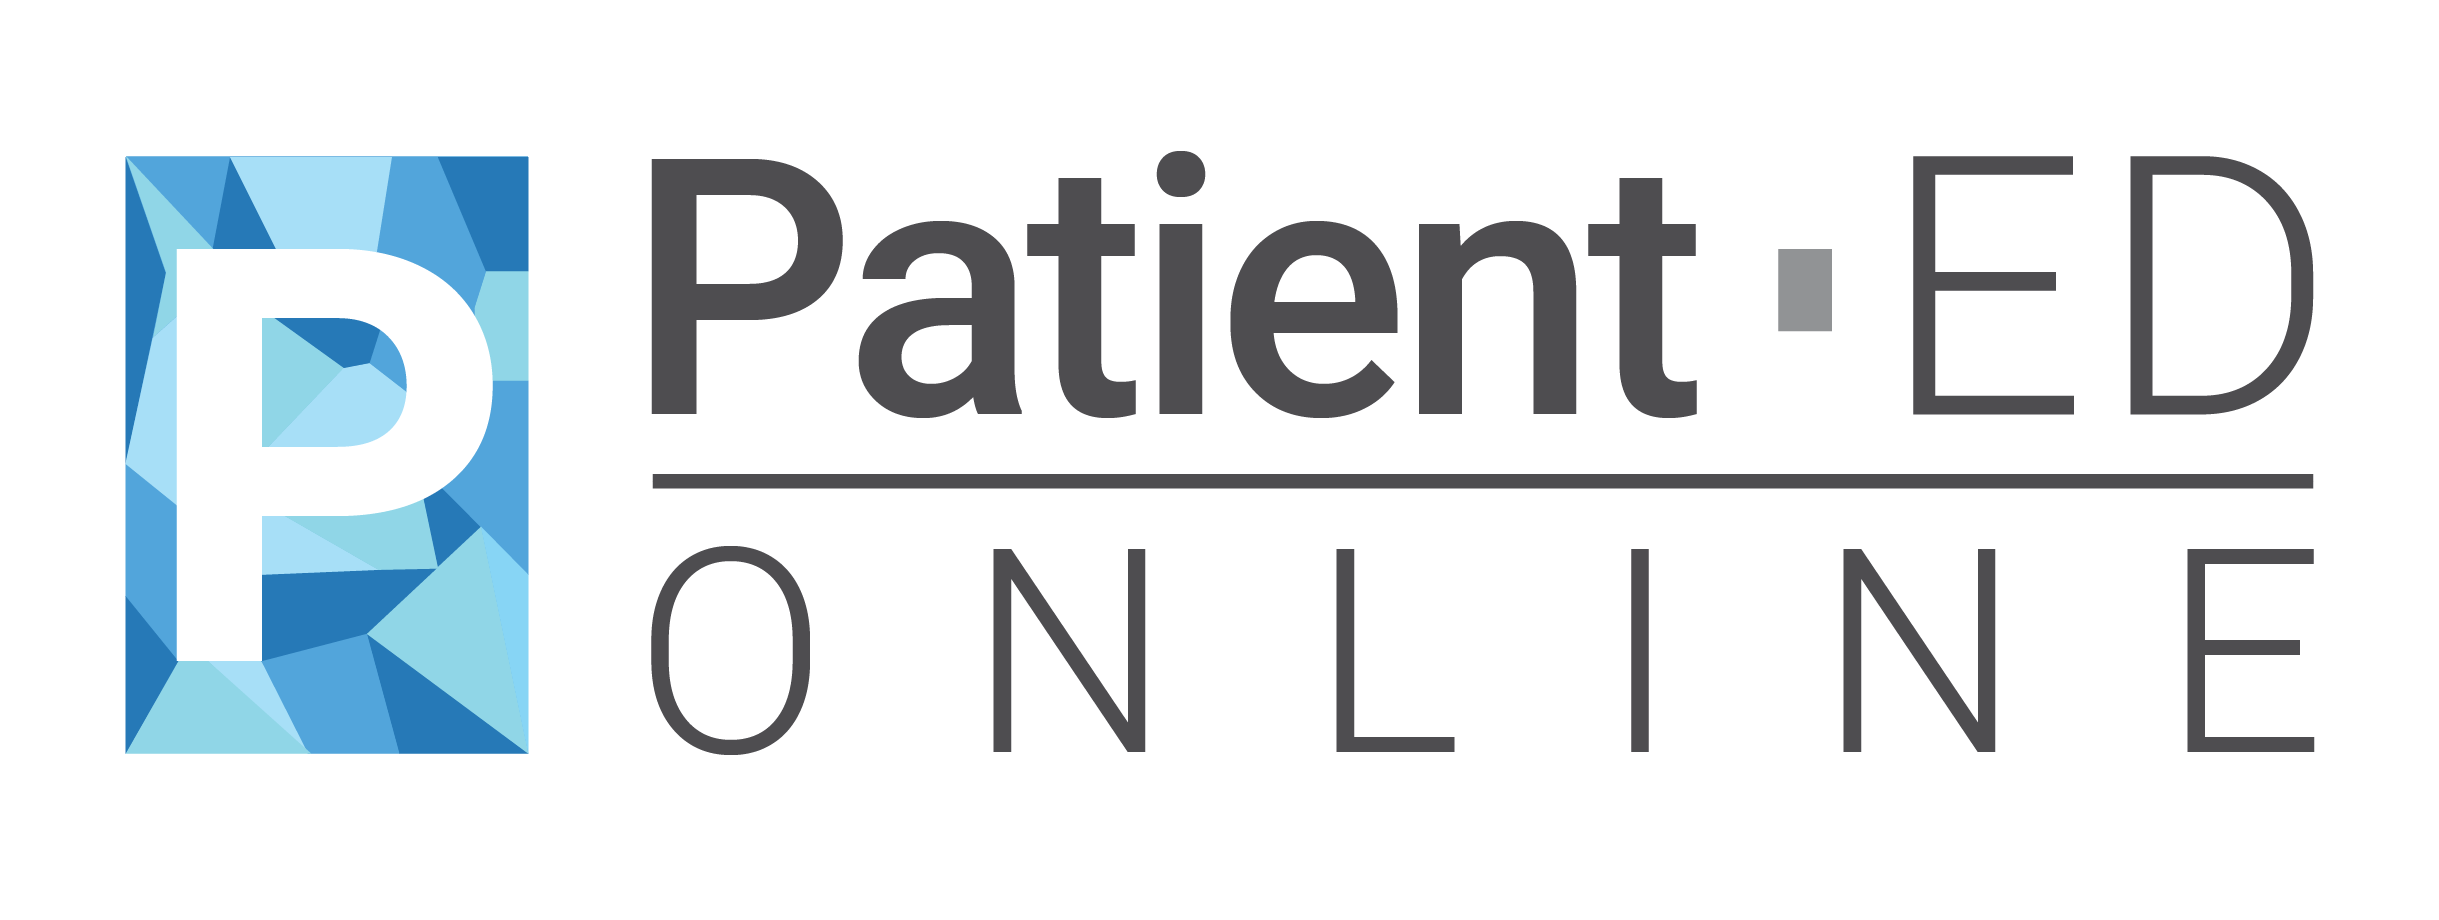 PatientEDonline